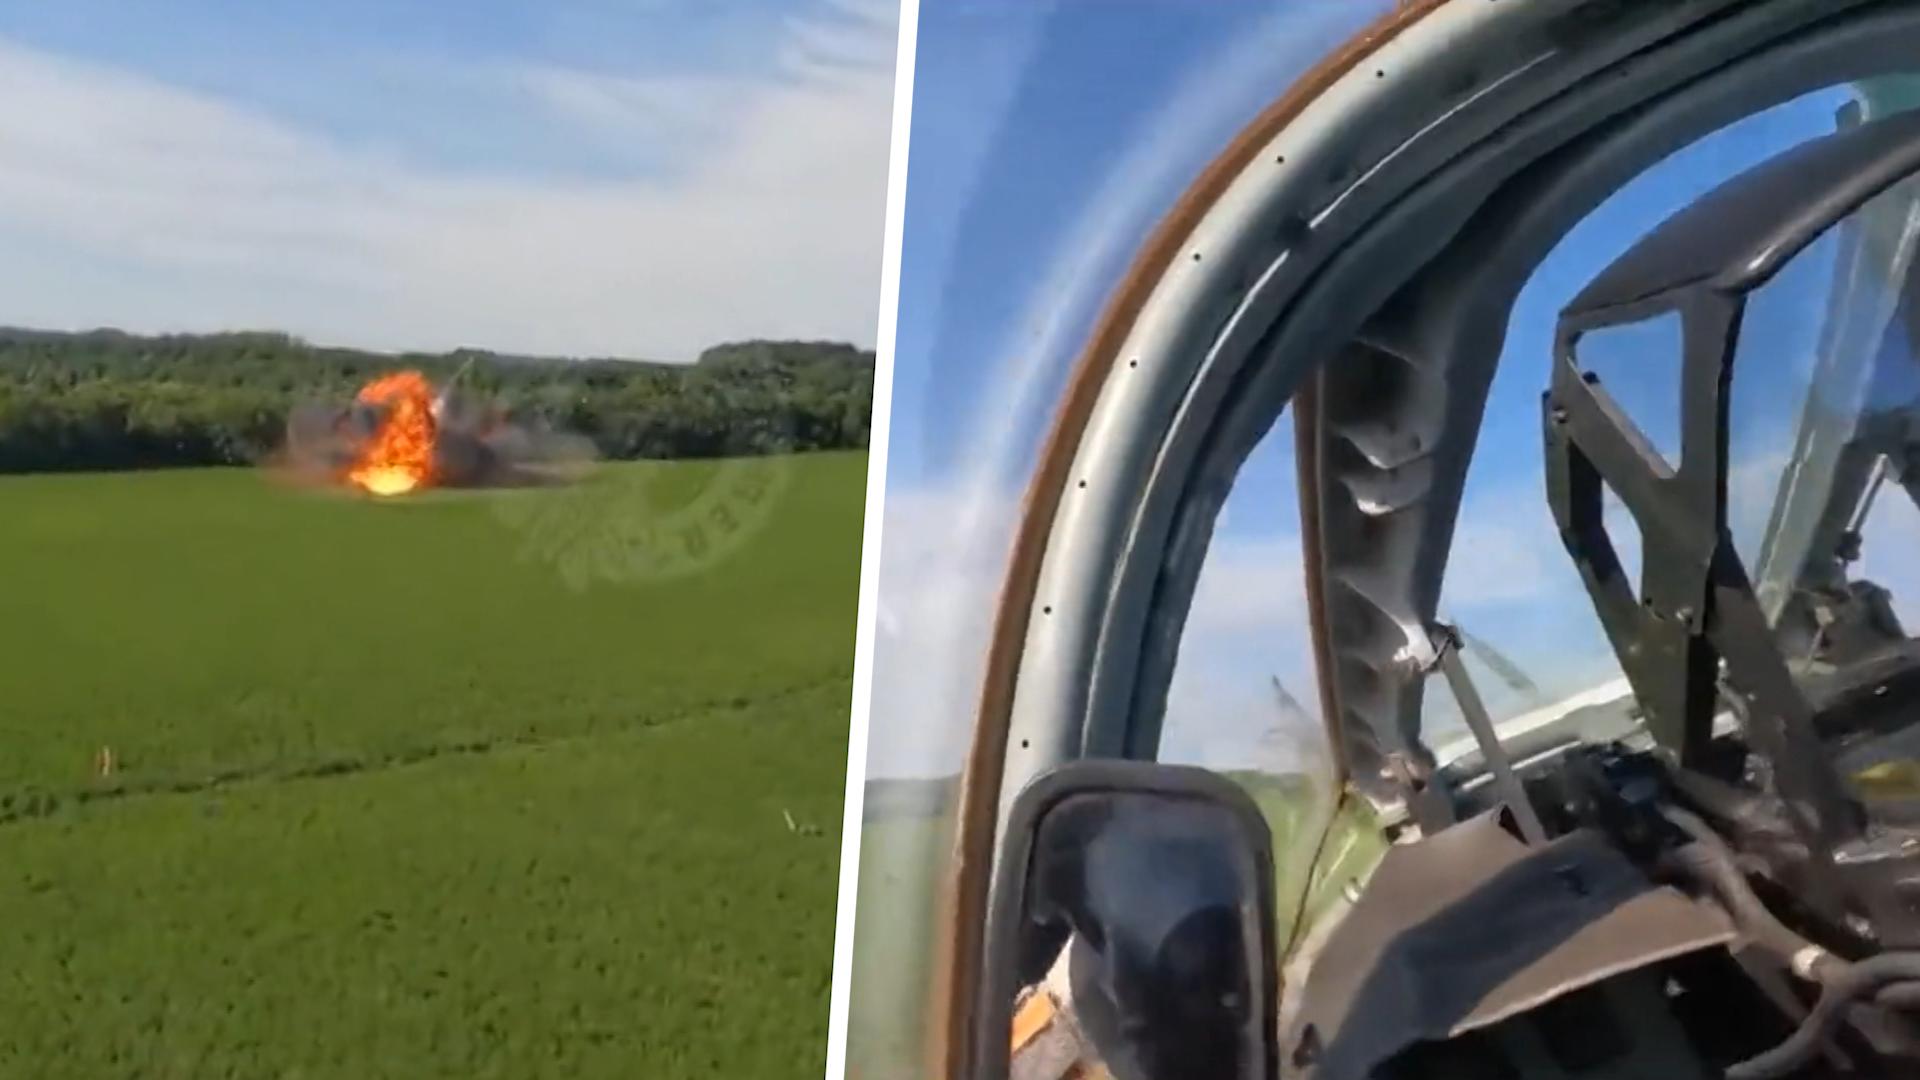 Fighter jet explodes: Pilot survives parachute crash during training